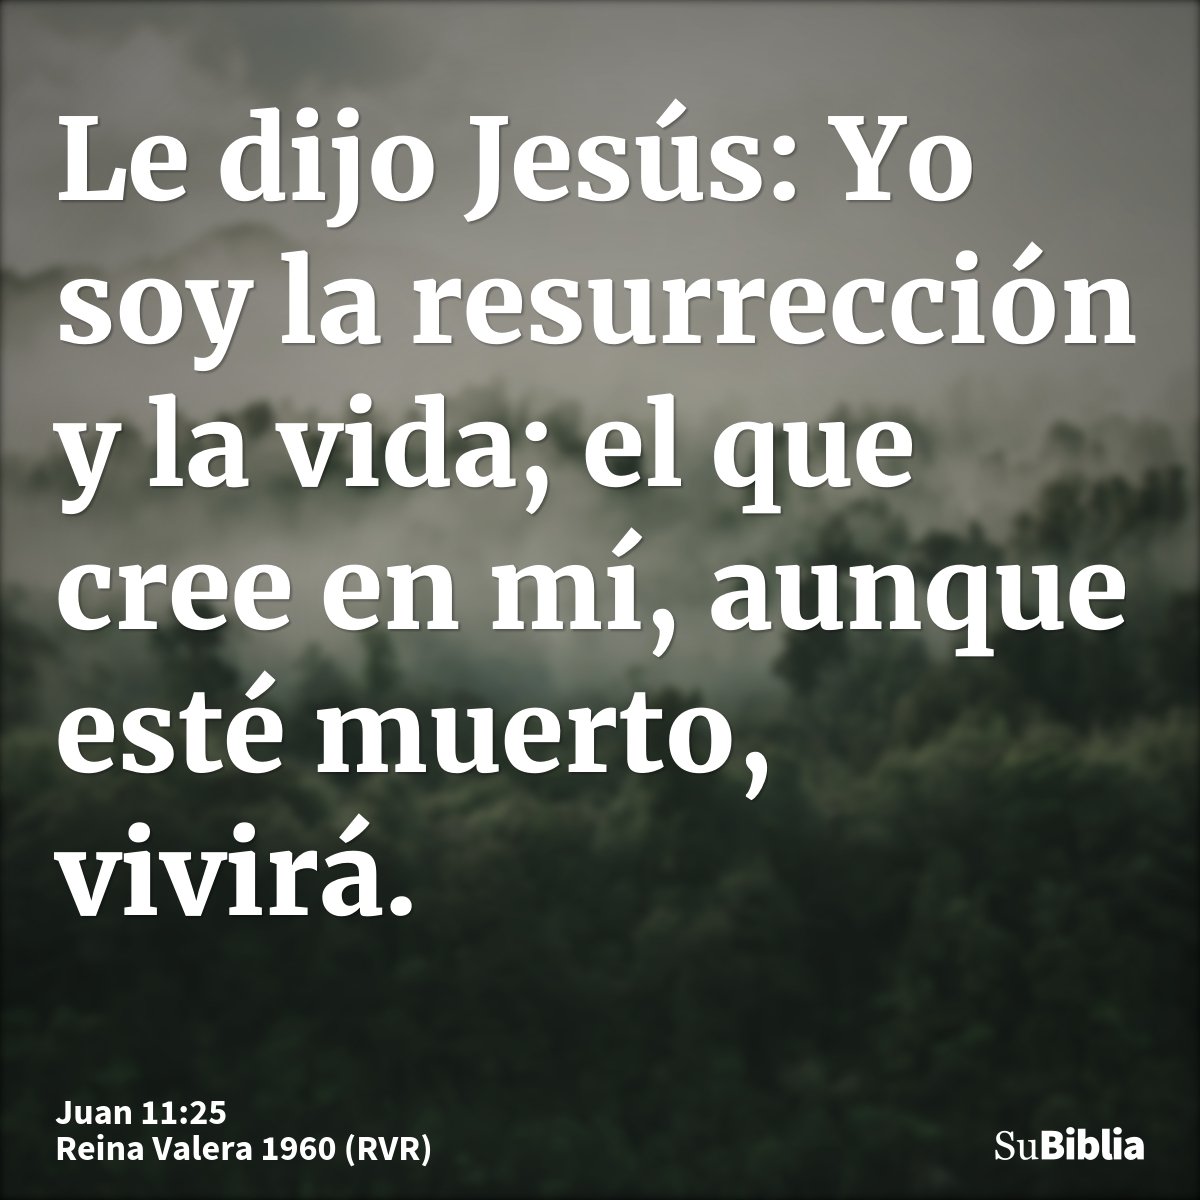 Le dijo Jesús: Yo soy la resurrección y la vida; el que cree en mí, aunque esté muerto, vivirá.